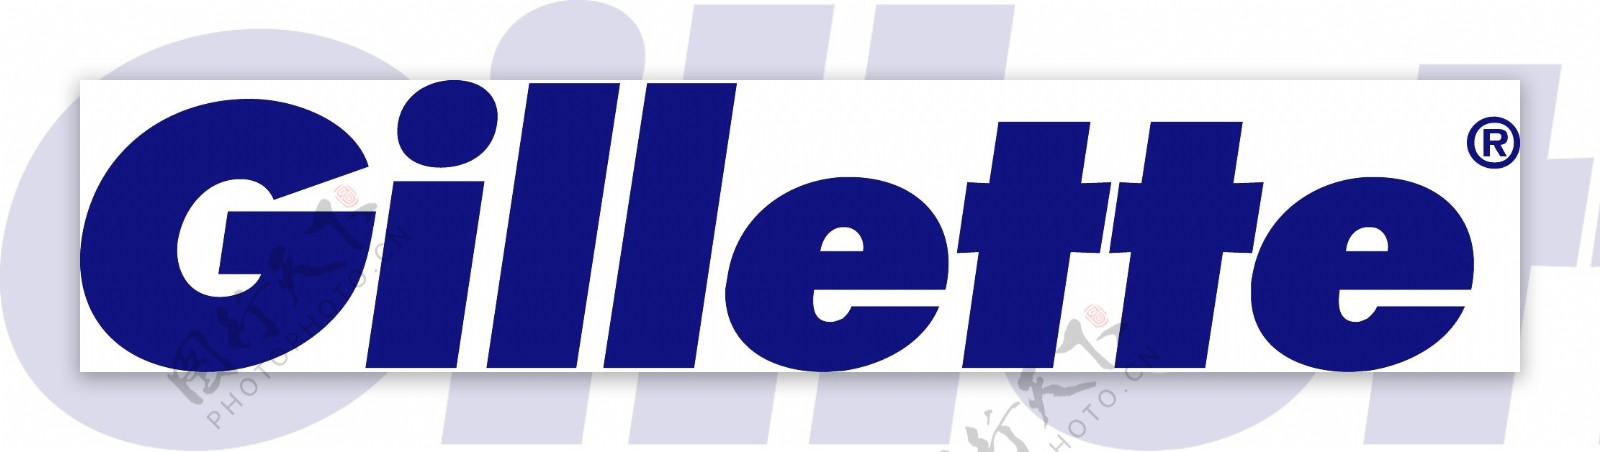 吉列logo图片